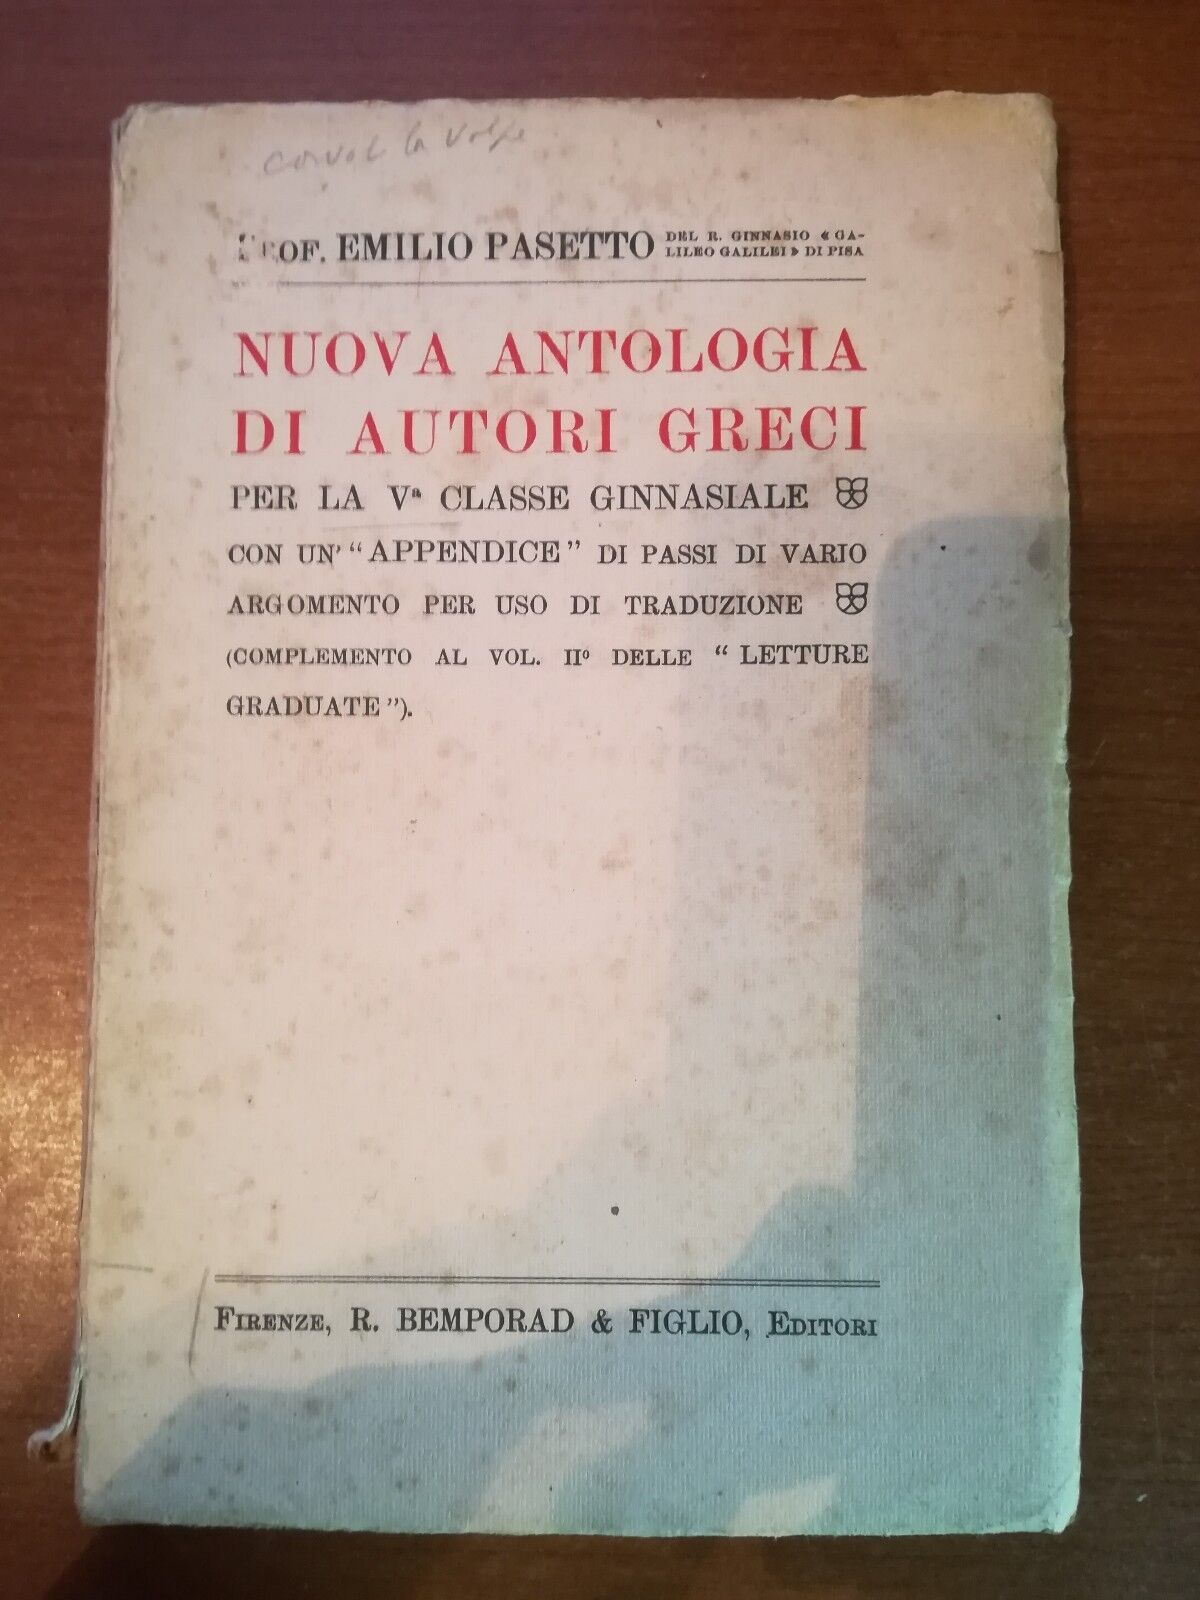 Nuova antologia di autori greci - Emilio Pasetto - Bemporad - 1926 - M